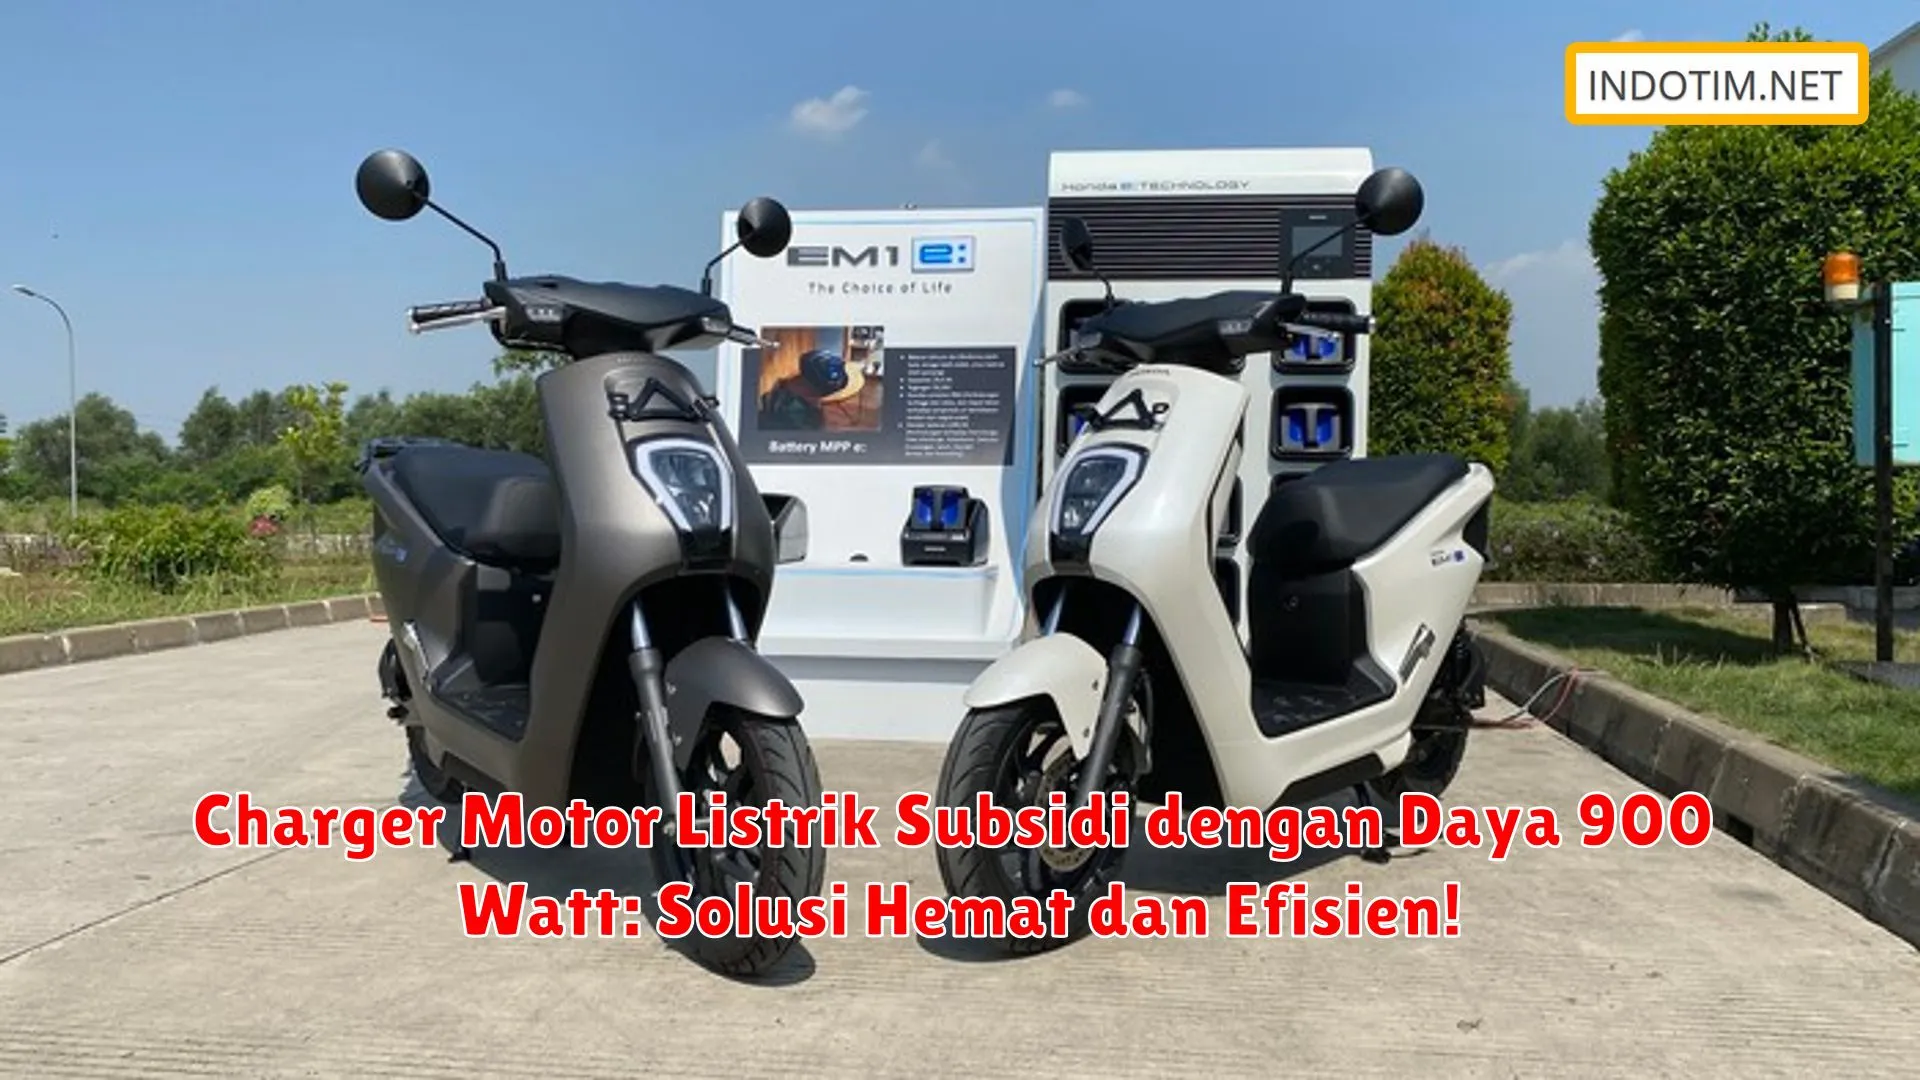 Charger Motor Listrik Subsidi dengan Daya 900 Watt: Solusi Hemat dan Efisien!